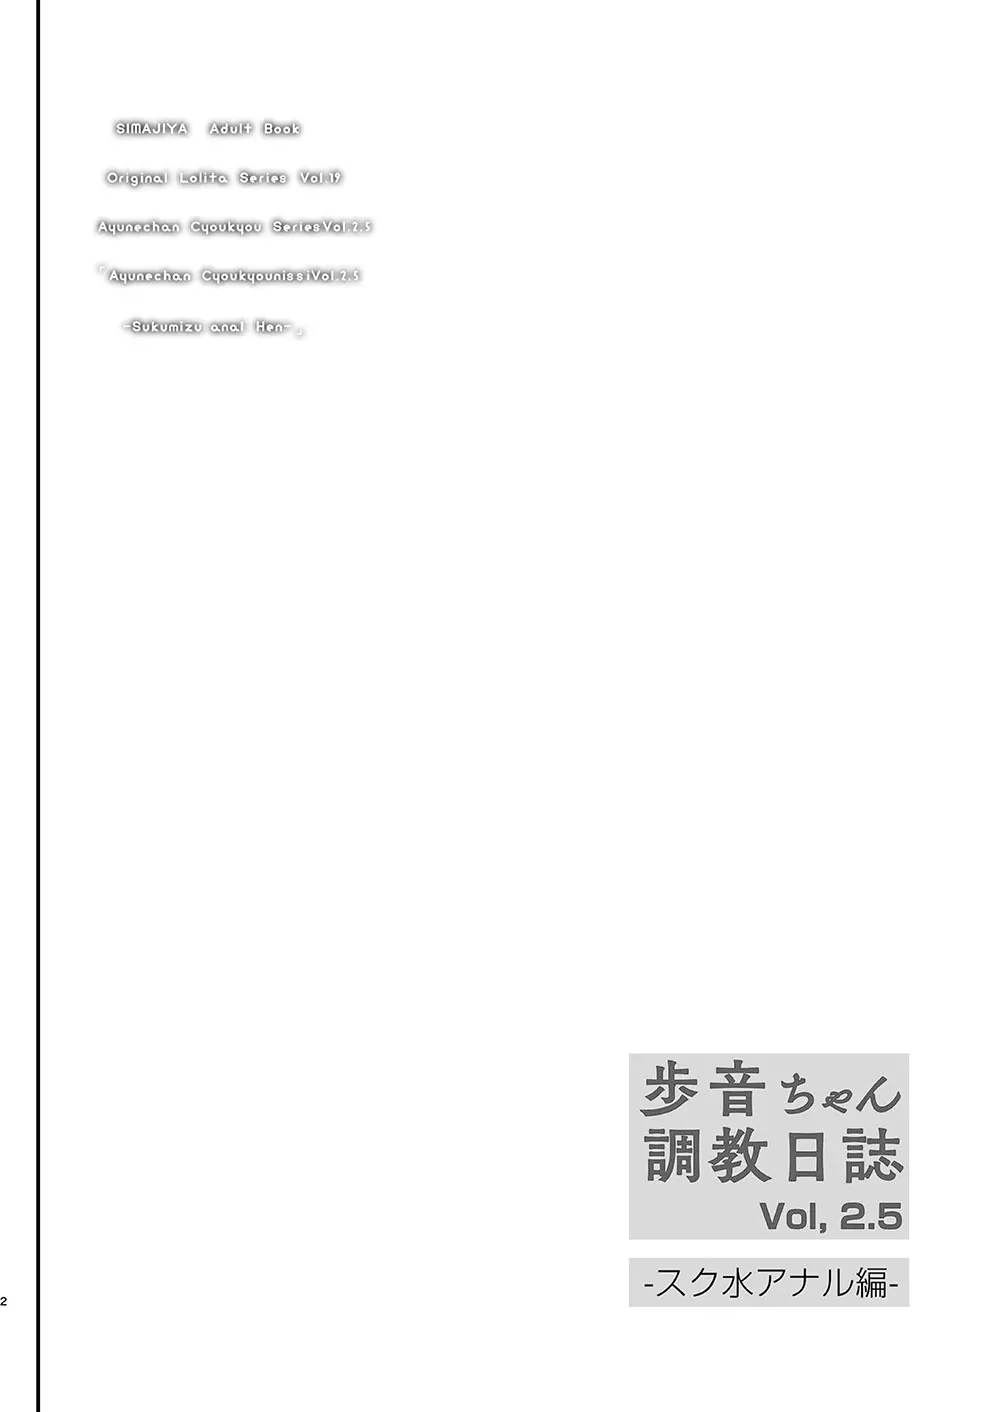 歩音ちゃん 調教日誌 Vol2.5 -スク水アナル編- 3ページ